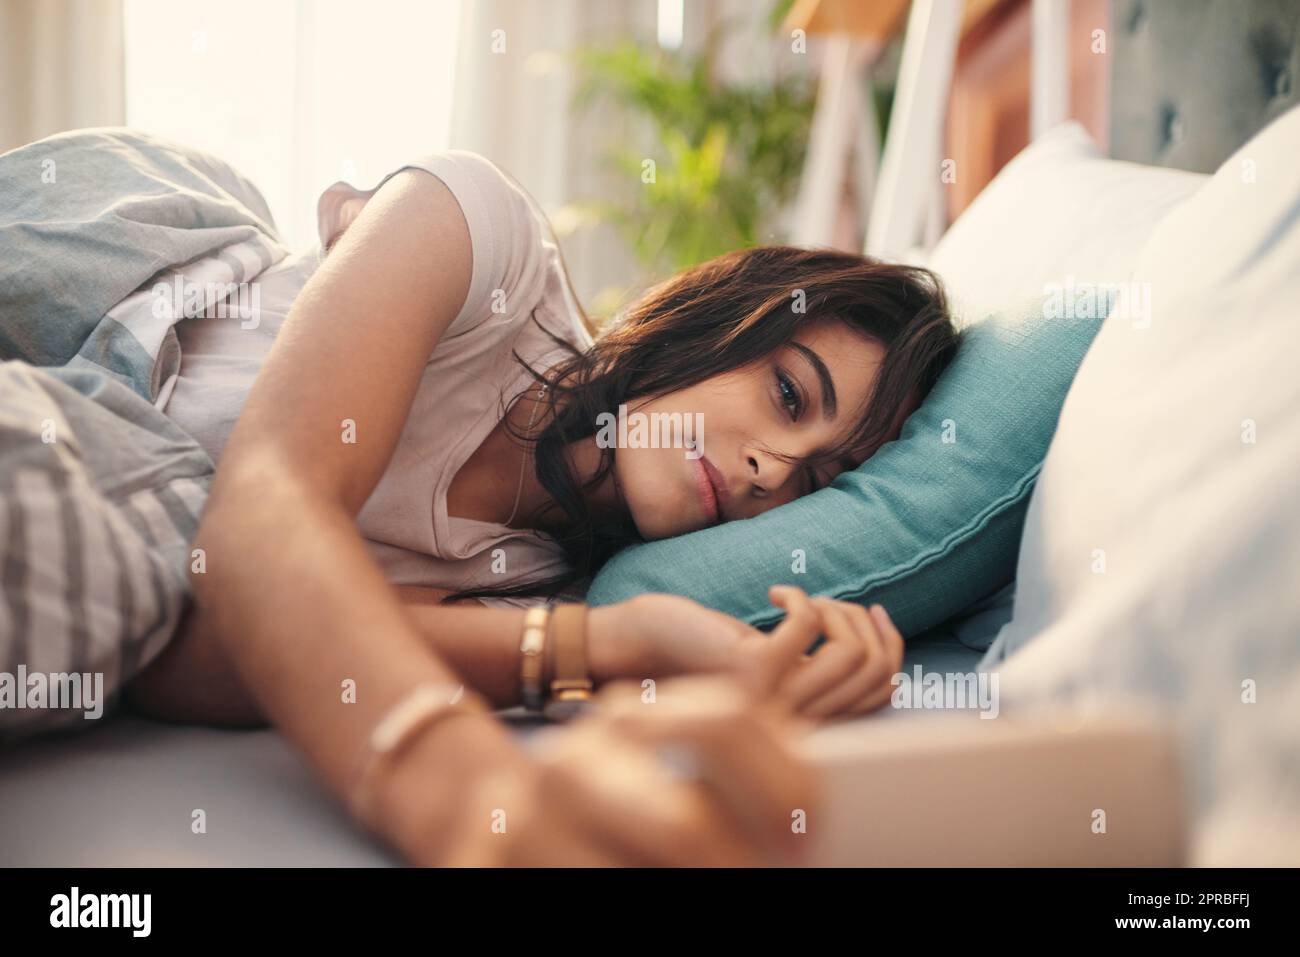 Dieser Winkel ist so schmeichelhaft. Eine junge Frau, die zu Hause Selfies im Bett macht. Stockfoto